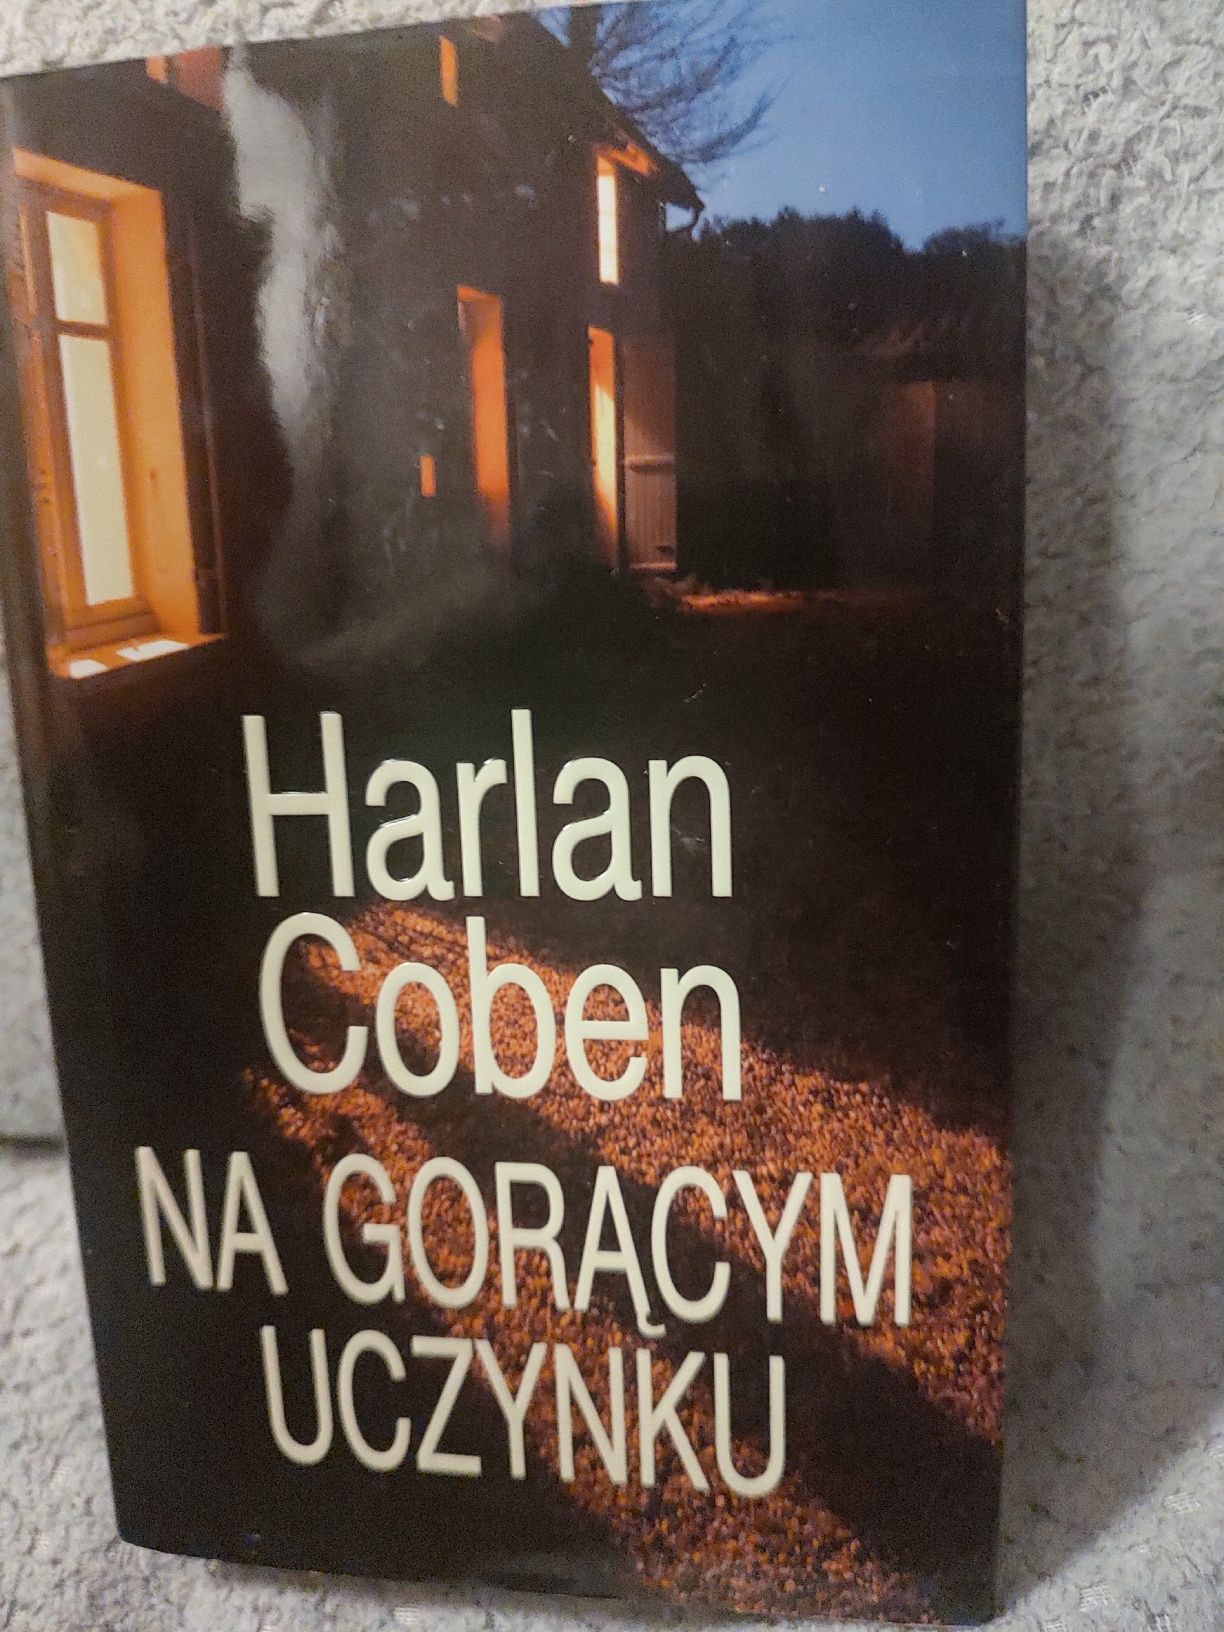 Książka Harlan Coben "Na gorącym uczynku"